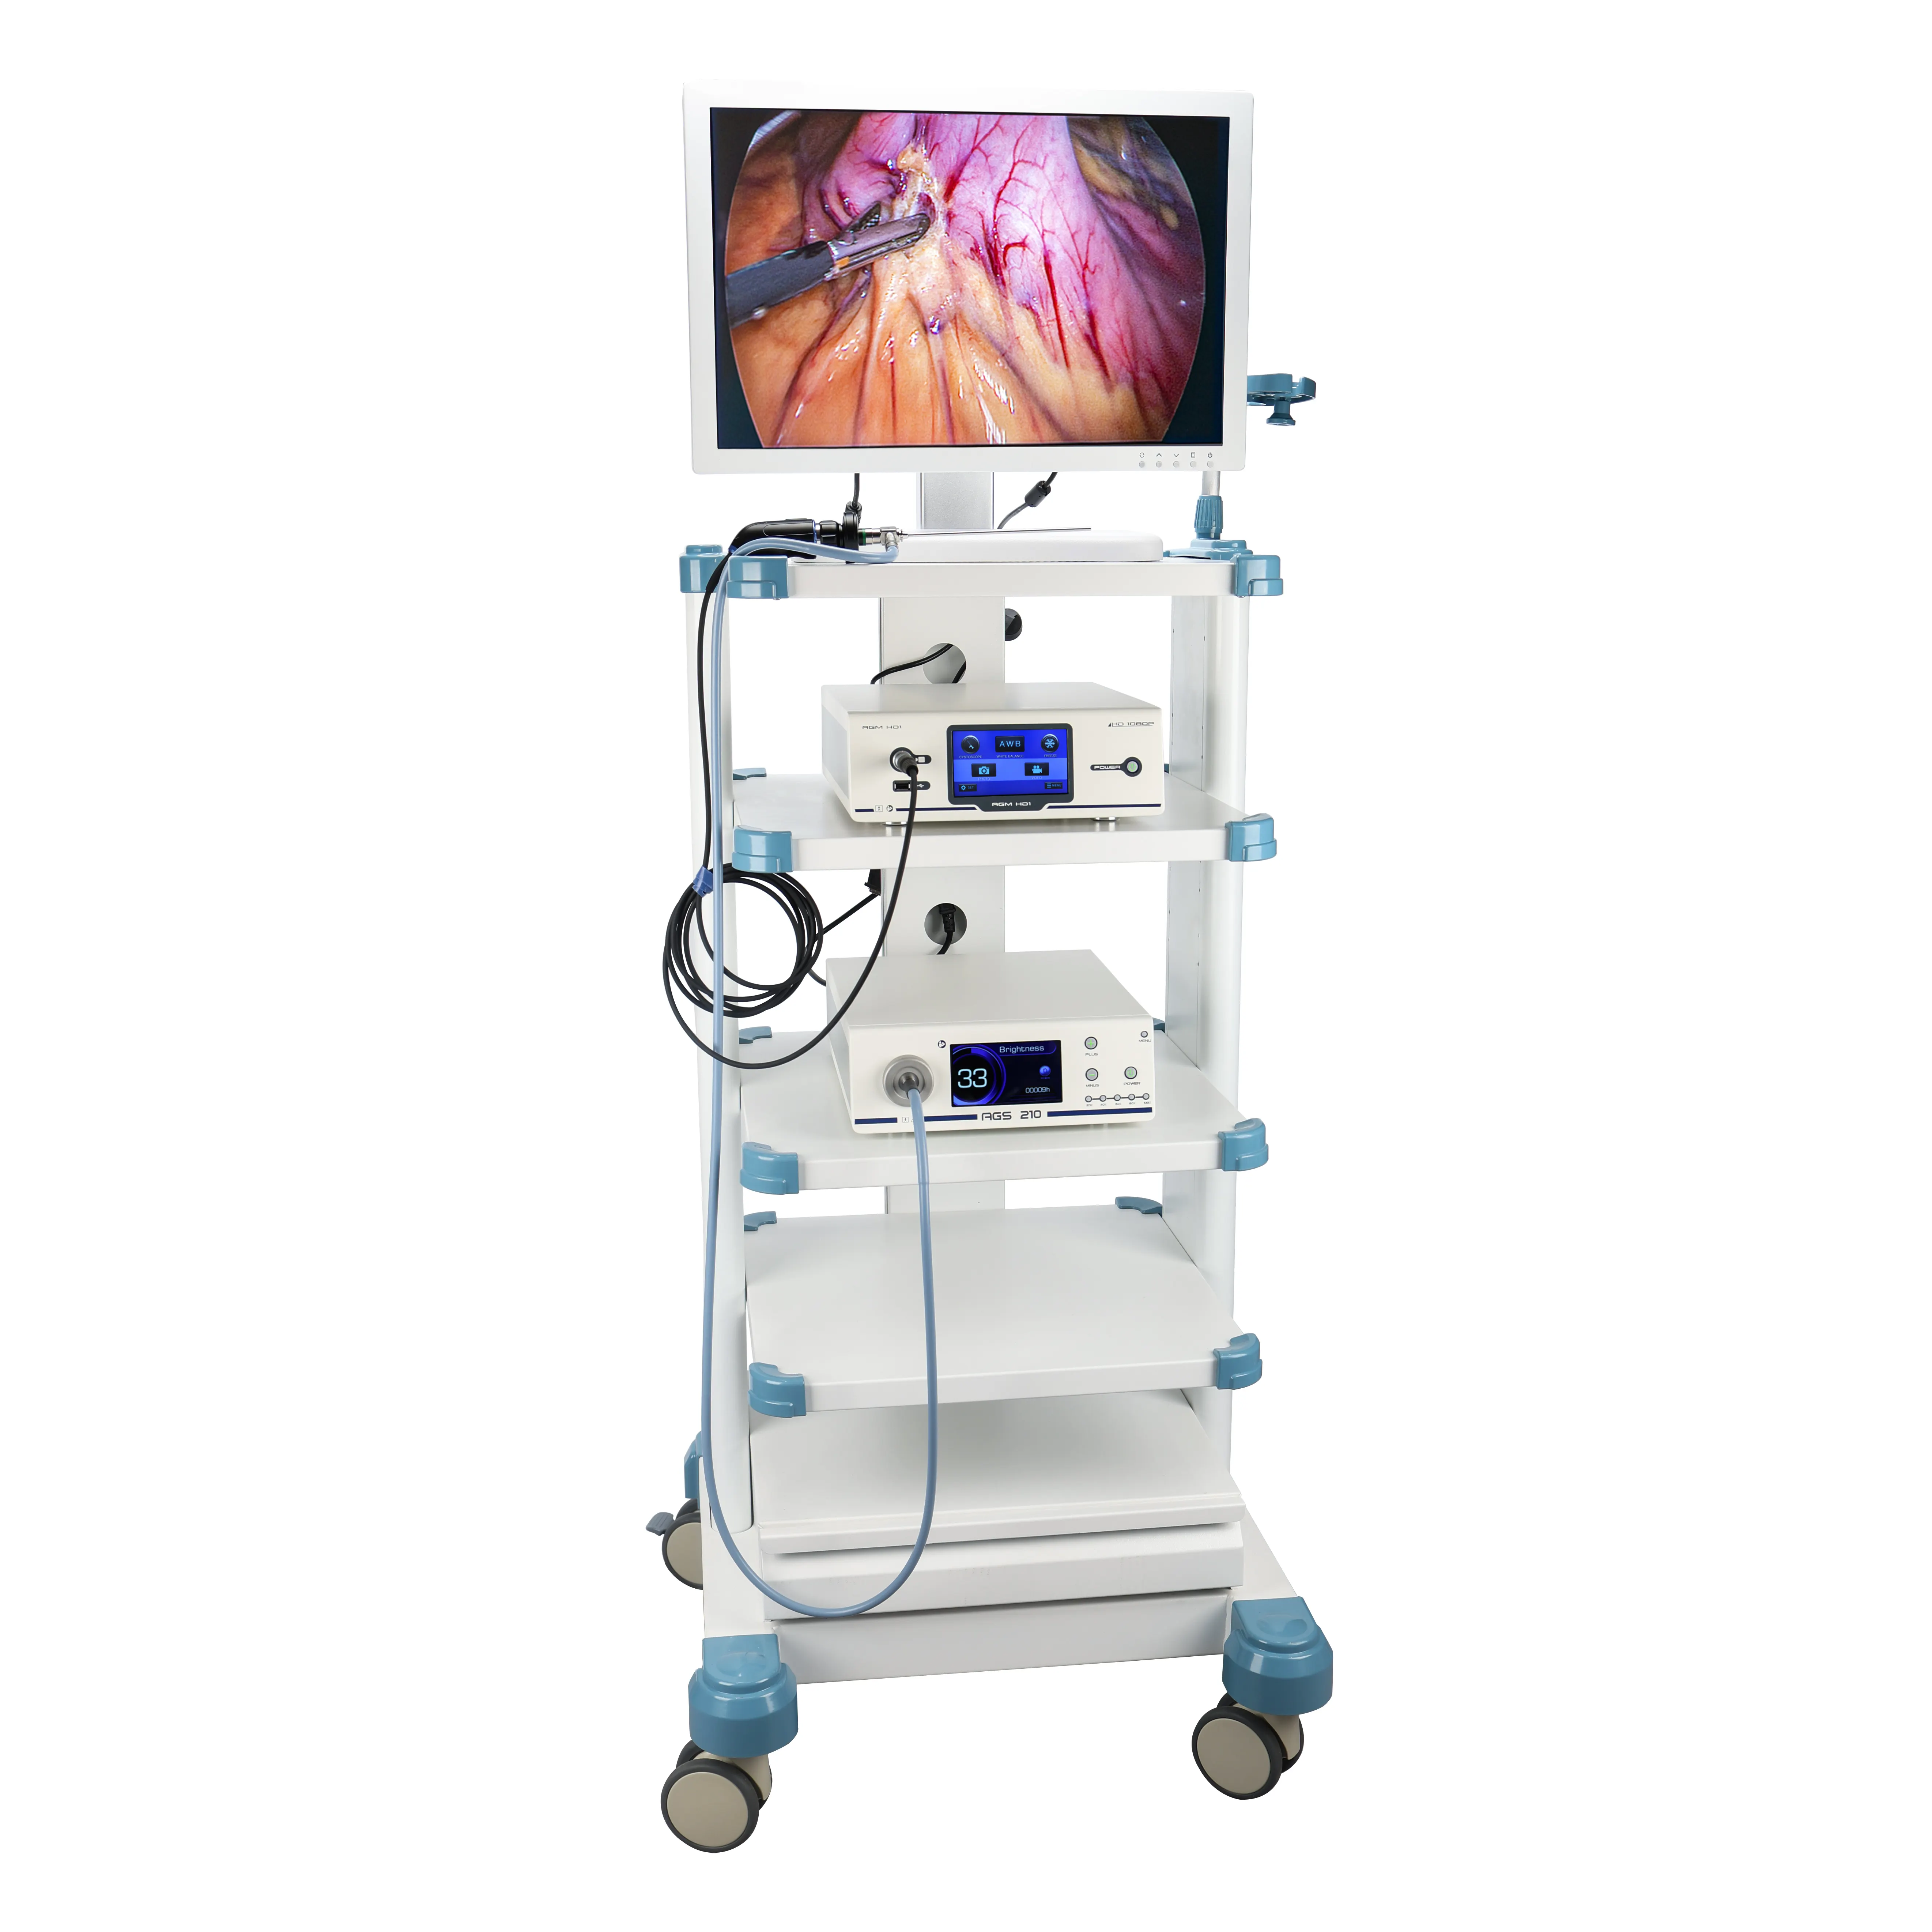 Torre de laparoscopia Full HD preço de fábrica de conjunto completo com instrumentos e dispositivos laparoscópicos, sistema de câmera endoscópica